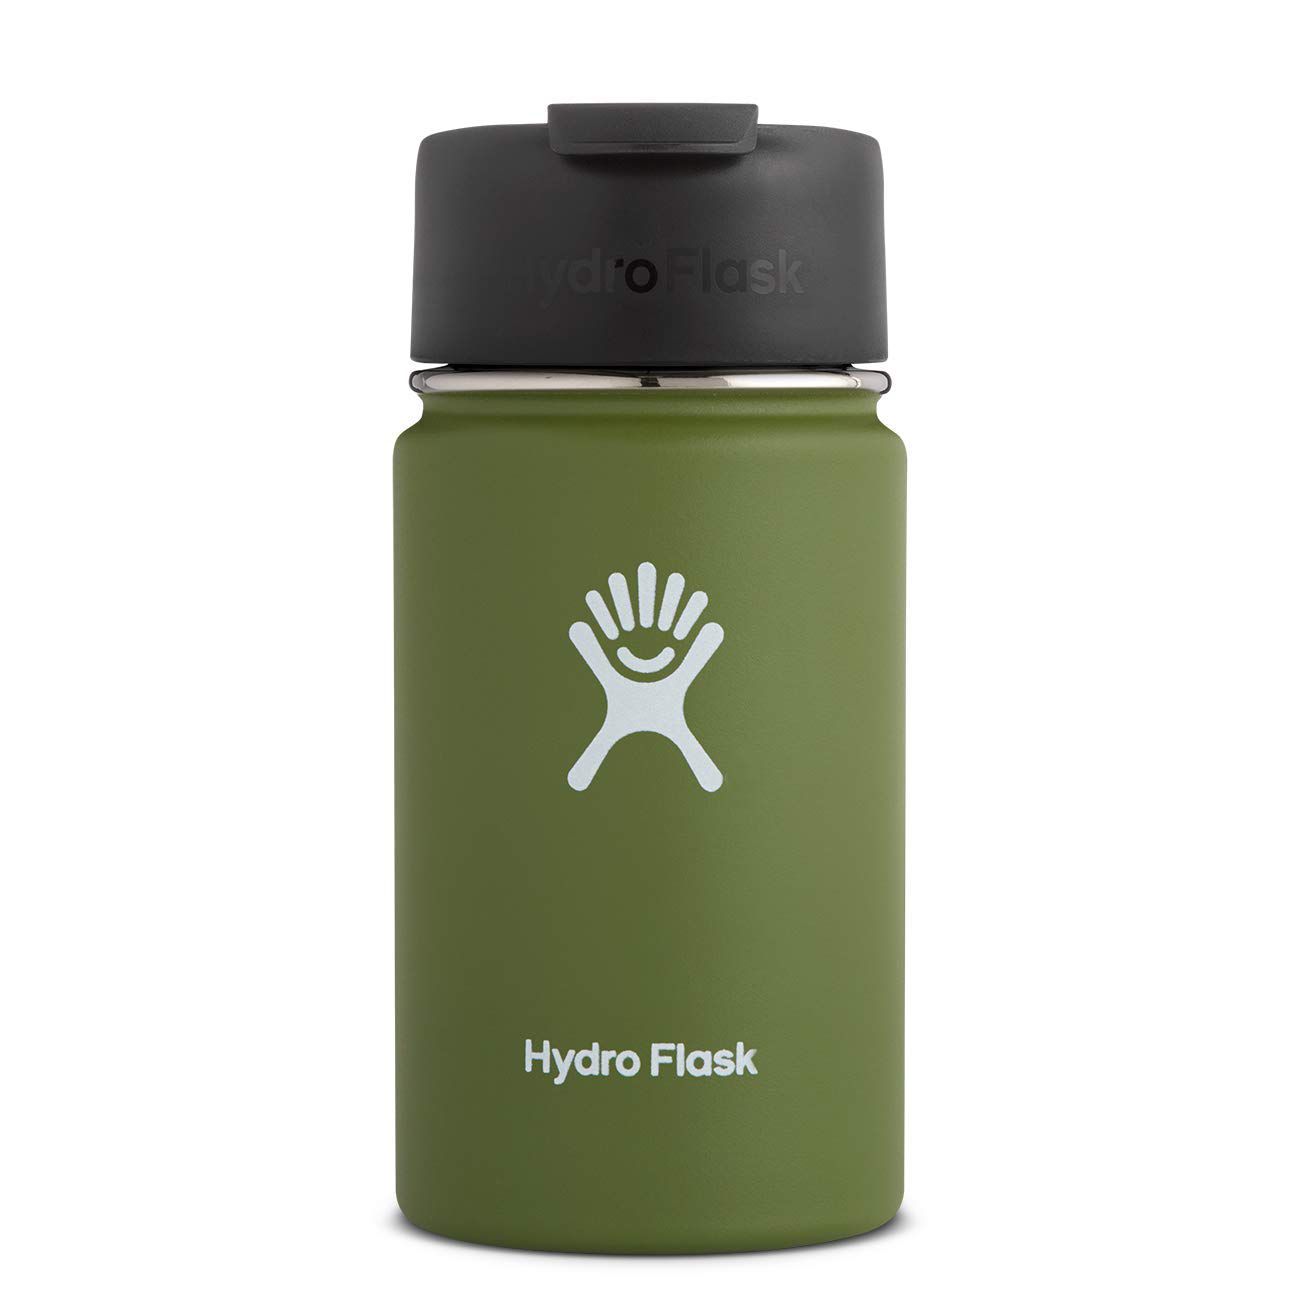 Hydro Flask Coffee bottle